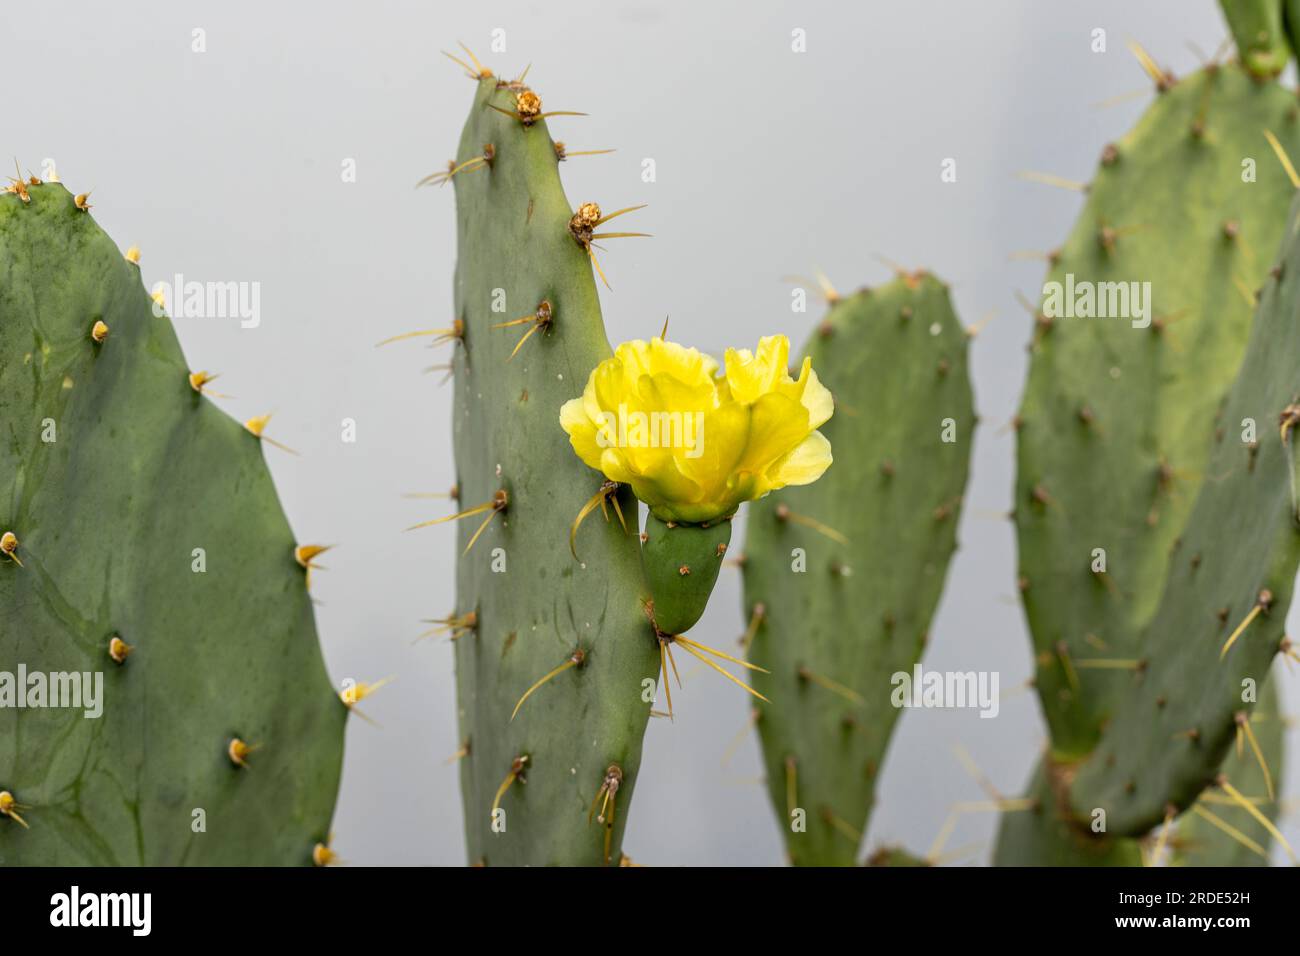 Gros plan d'une poire de Barbarie de cactus opuntia avec fleur jaune Banque D'Images